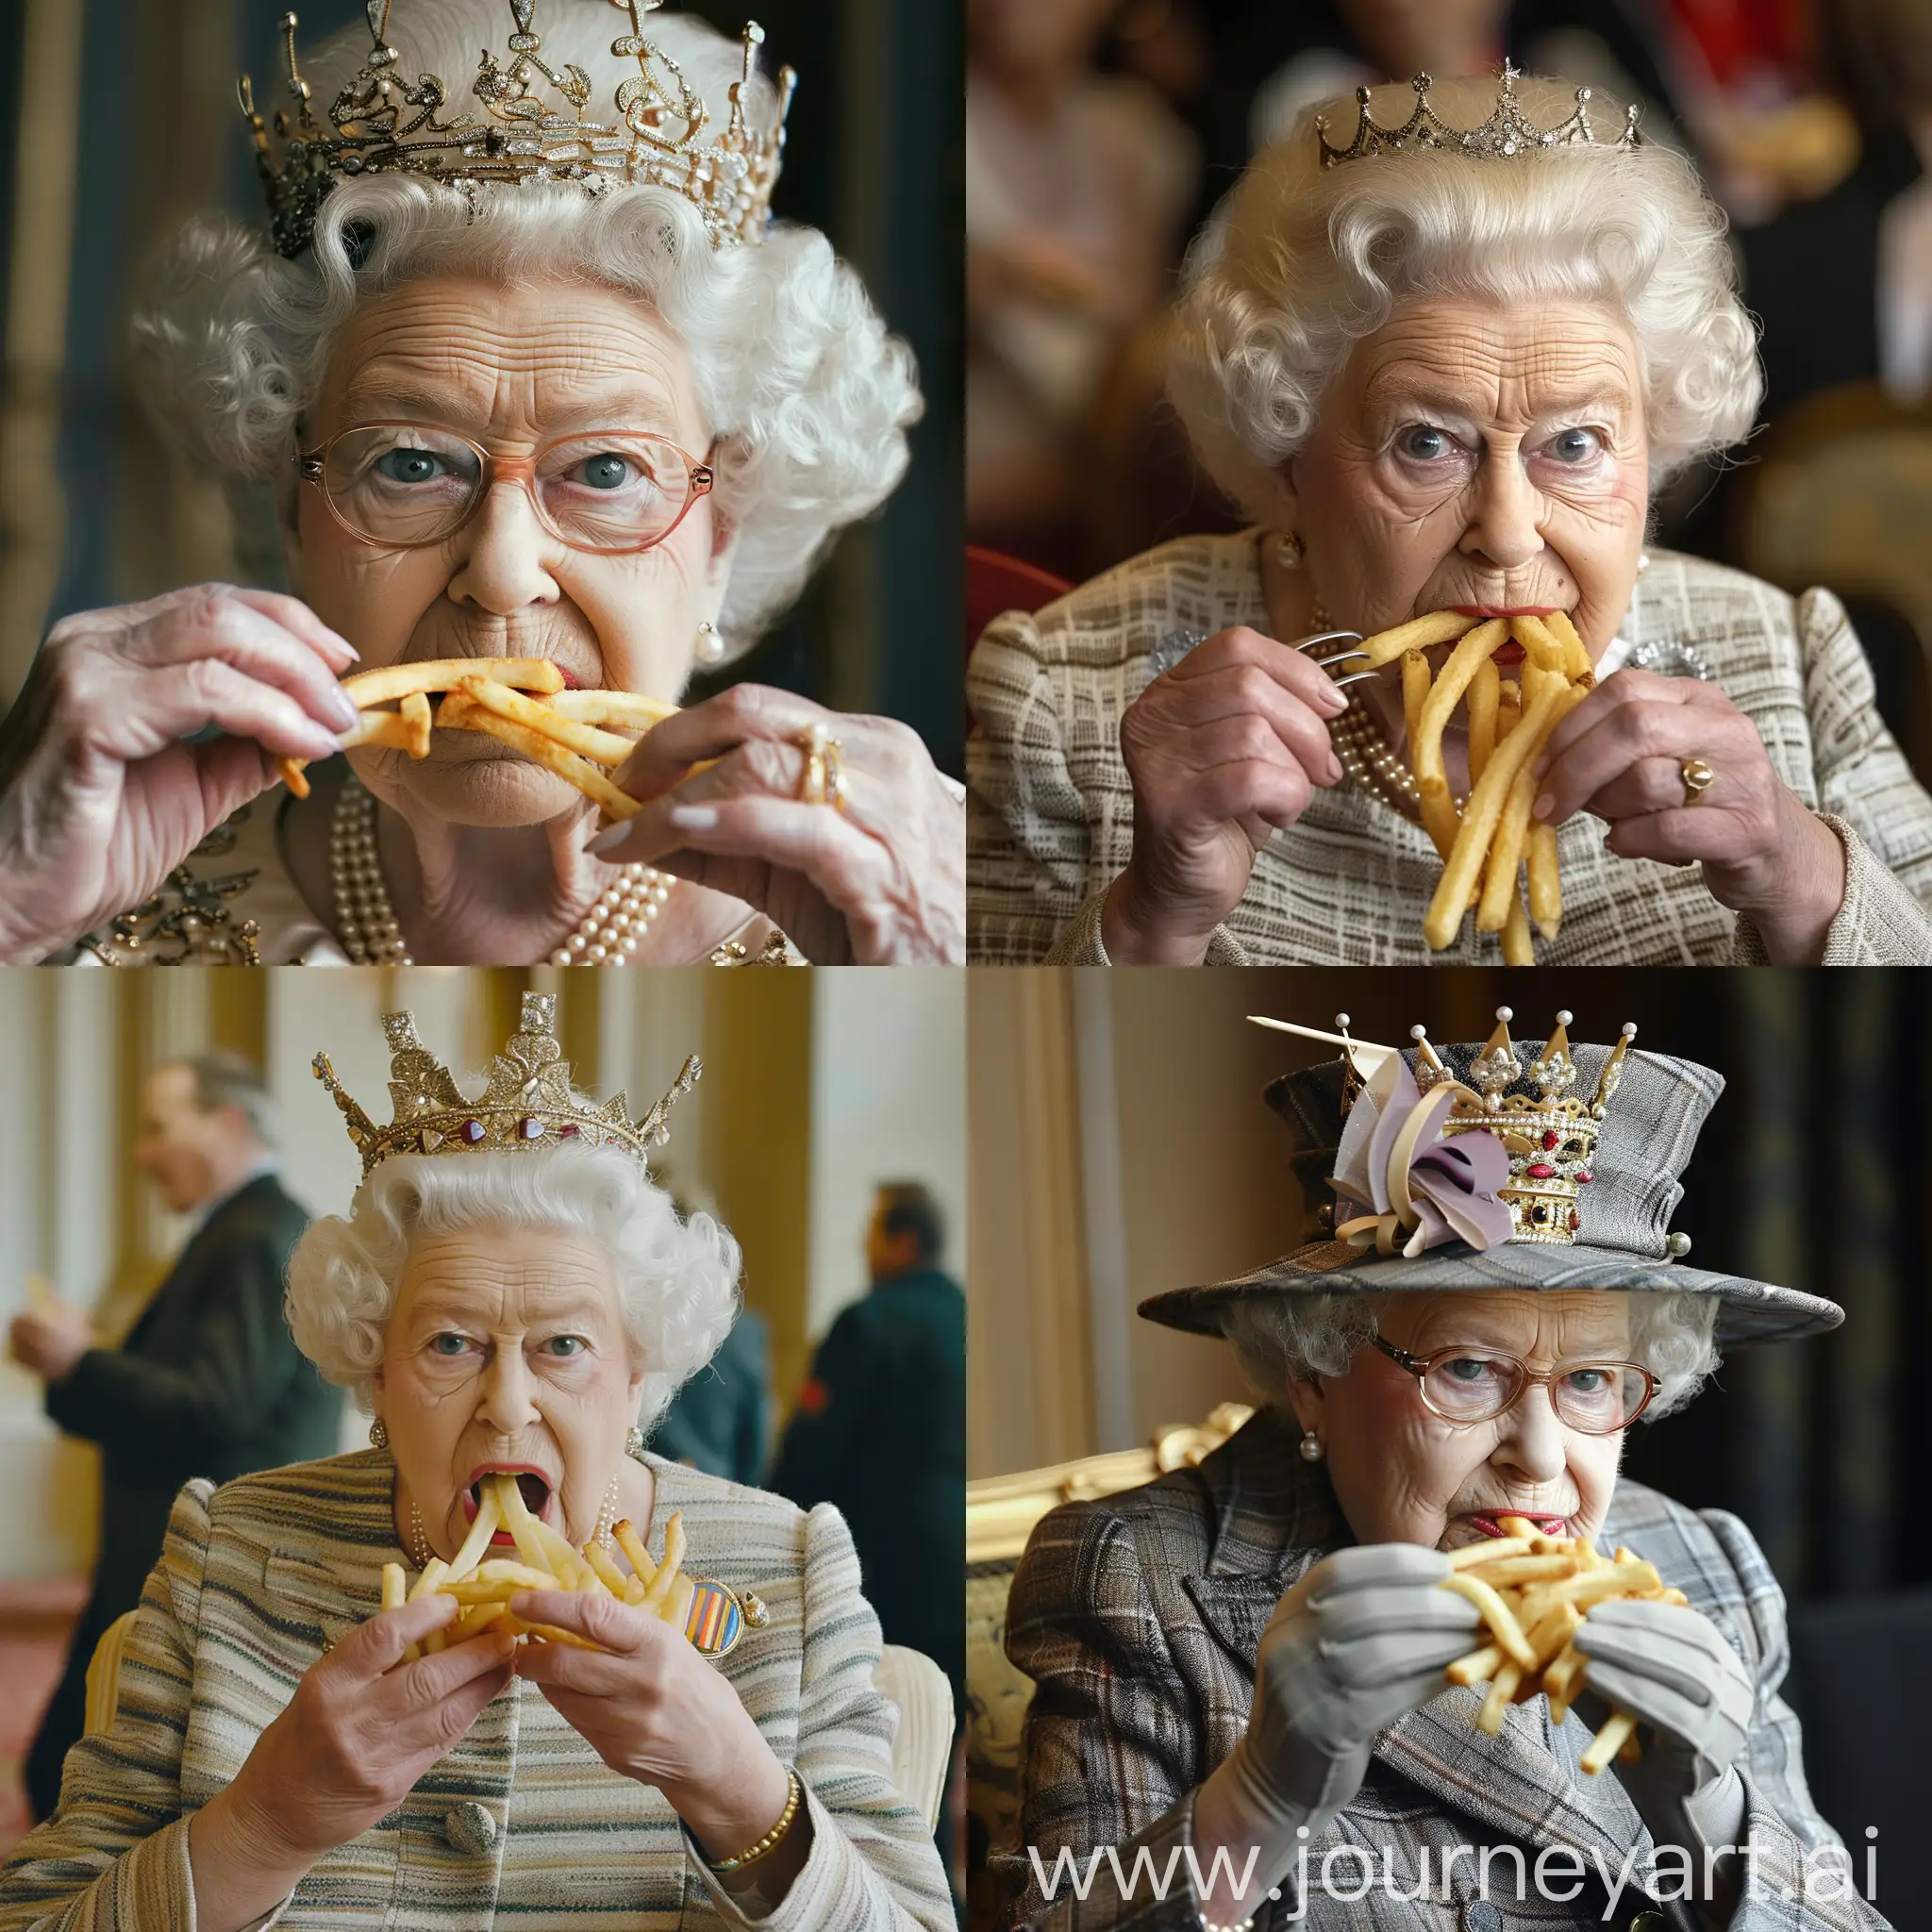 Queen eating fries